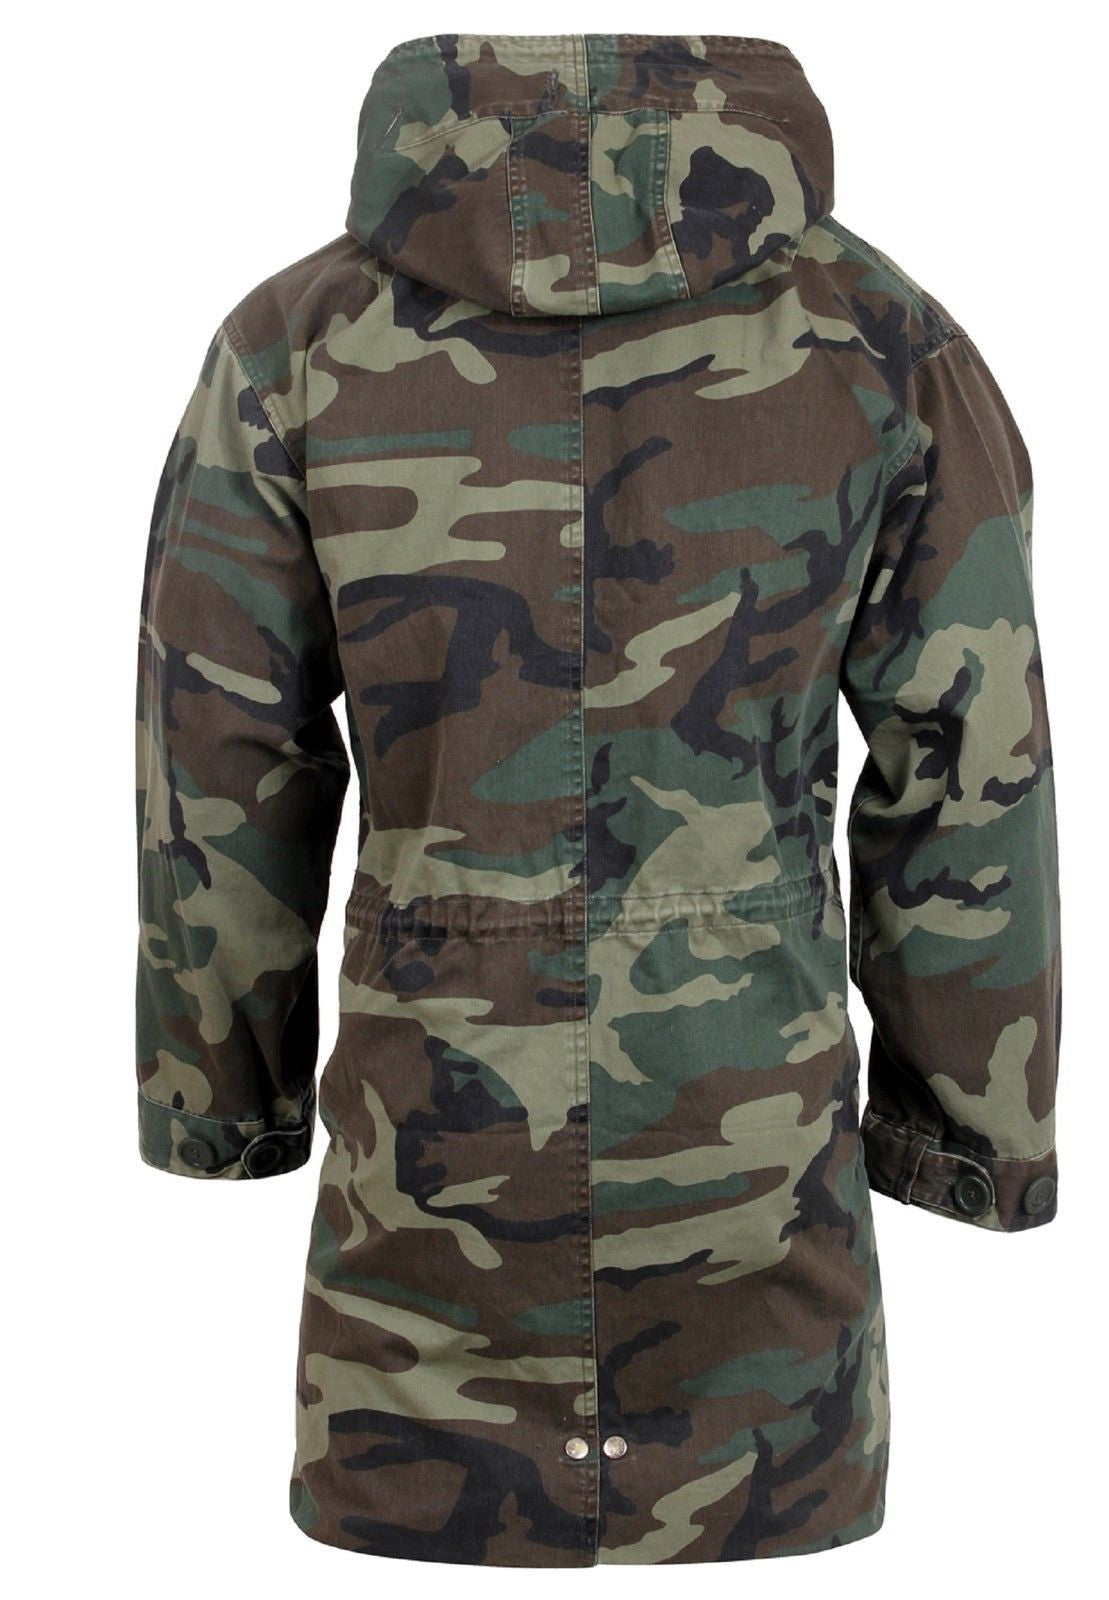 Mens Woodland Camouflage Gi Type M51 Fishtail Parka Jacket Coat